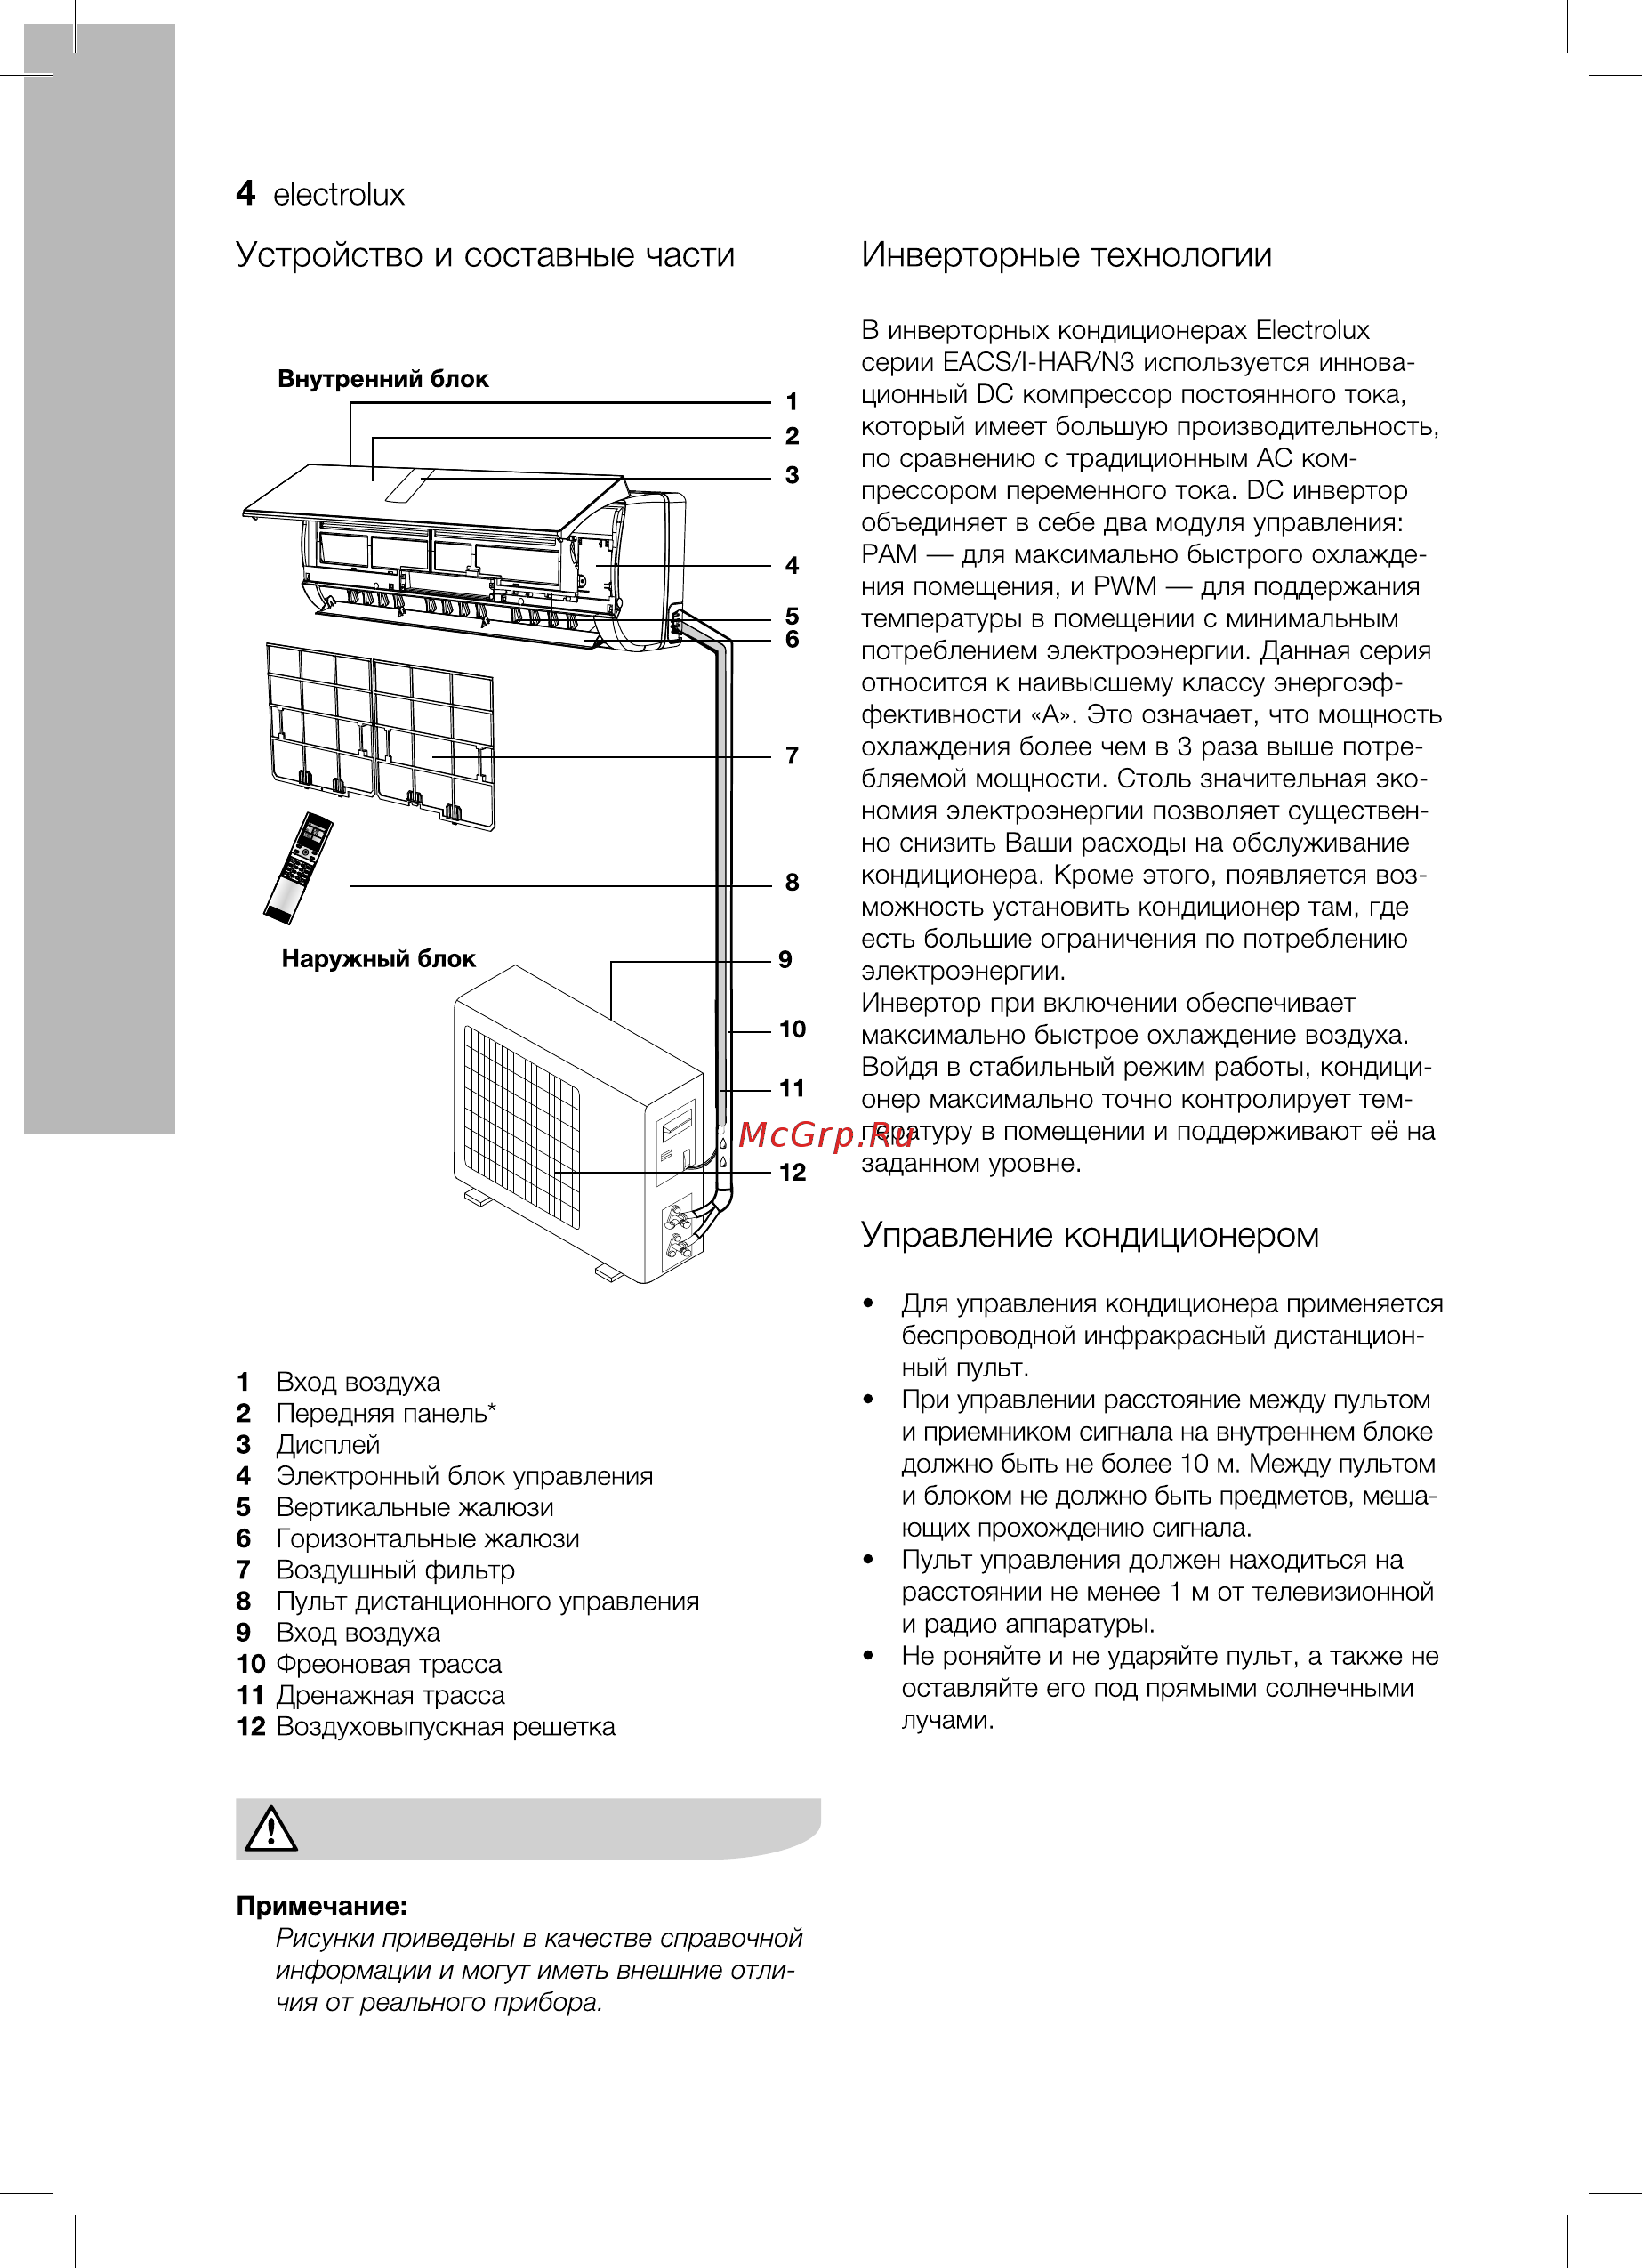 Сплит-система electrolux eacs-07hat/n3: обзор, характеристики и сравнение с конкурирующими моделями